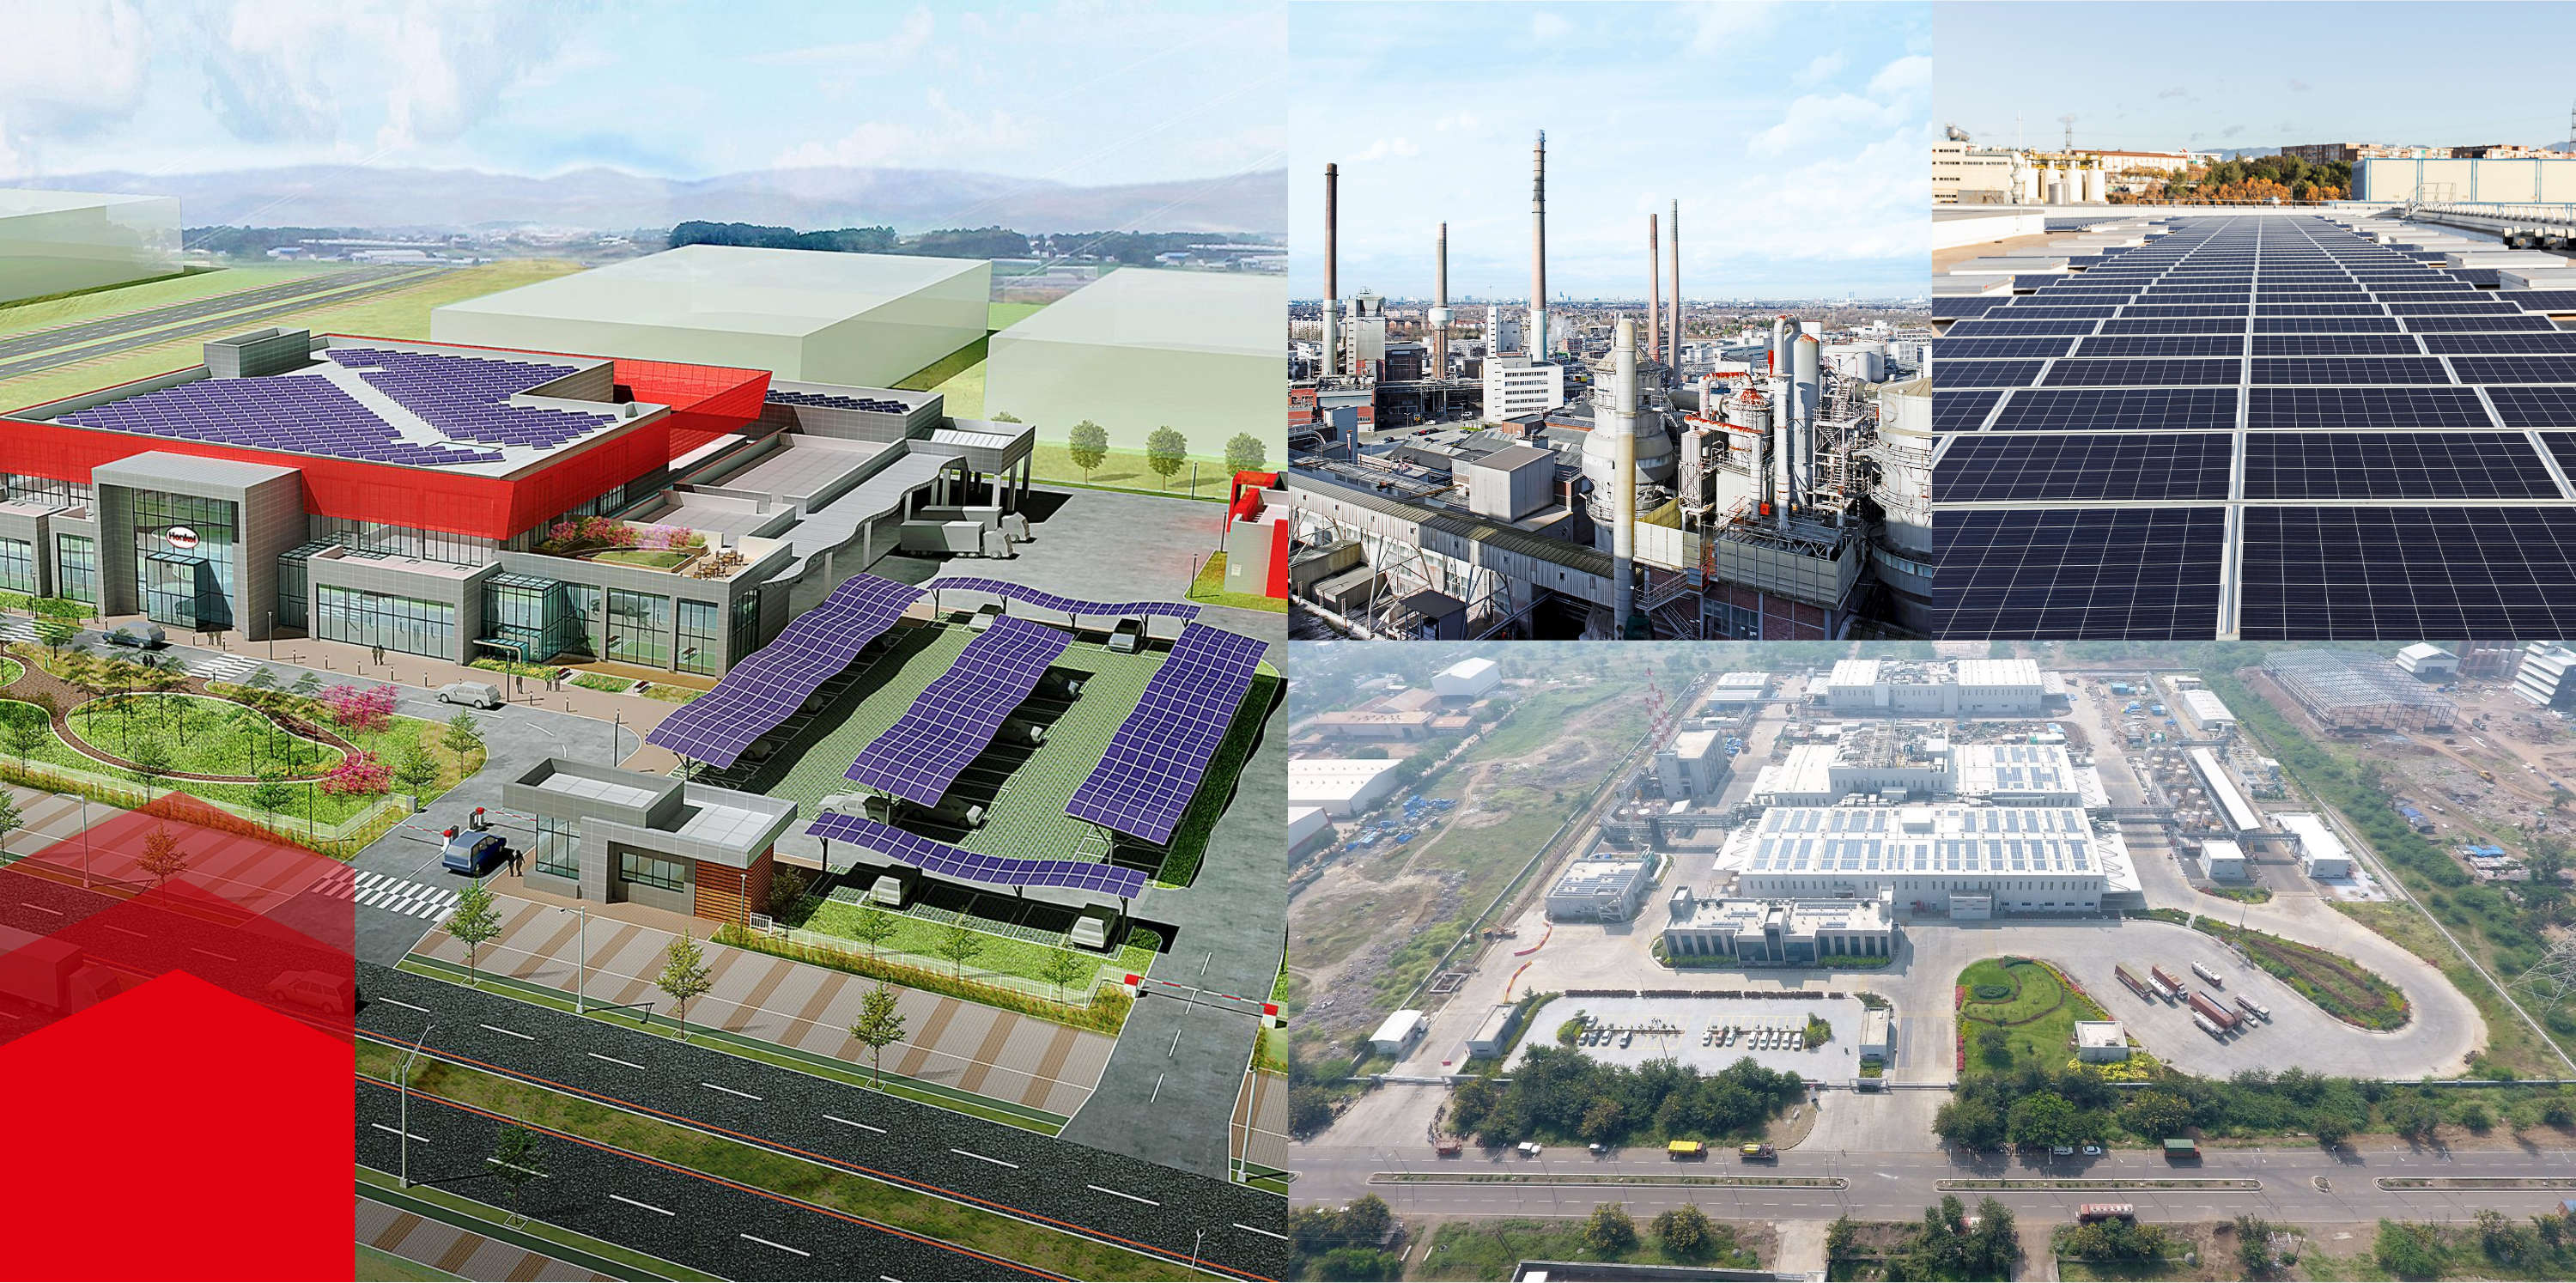 Güneş panelleri ve büyük fabrikaları olan binaların resimlerinden oluşan kolaj 